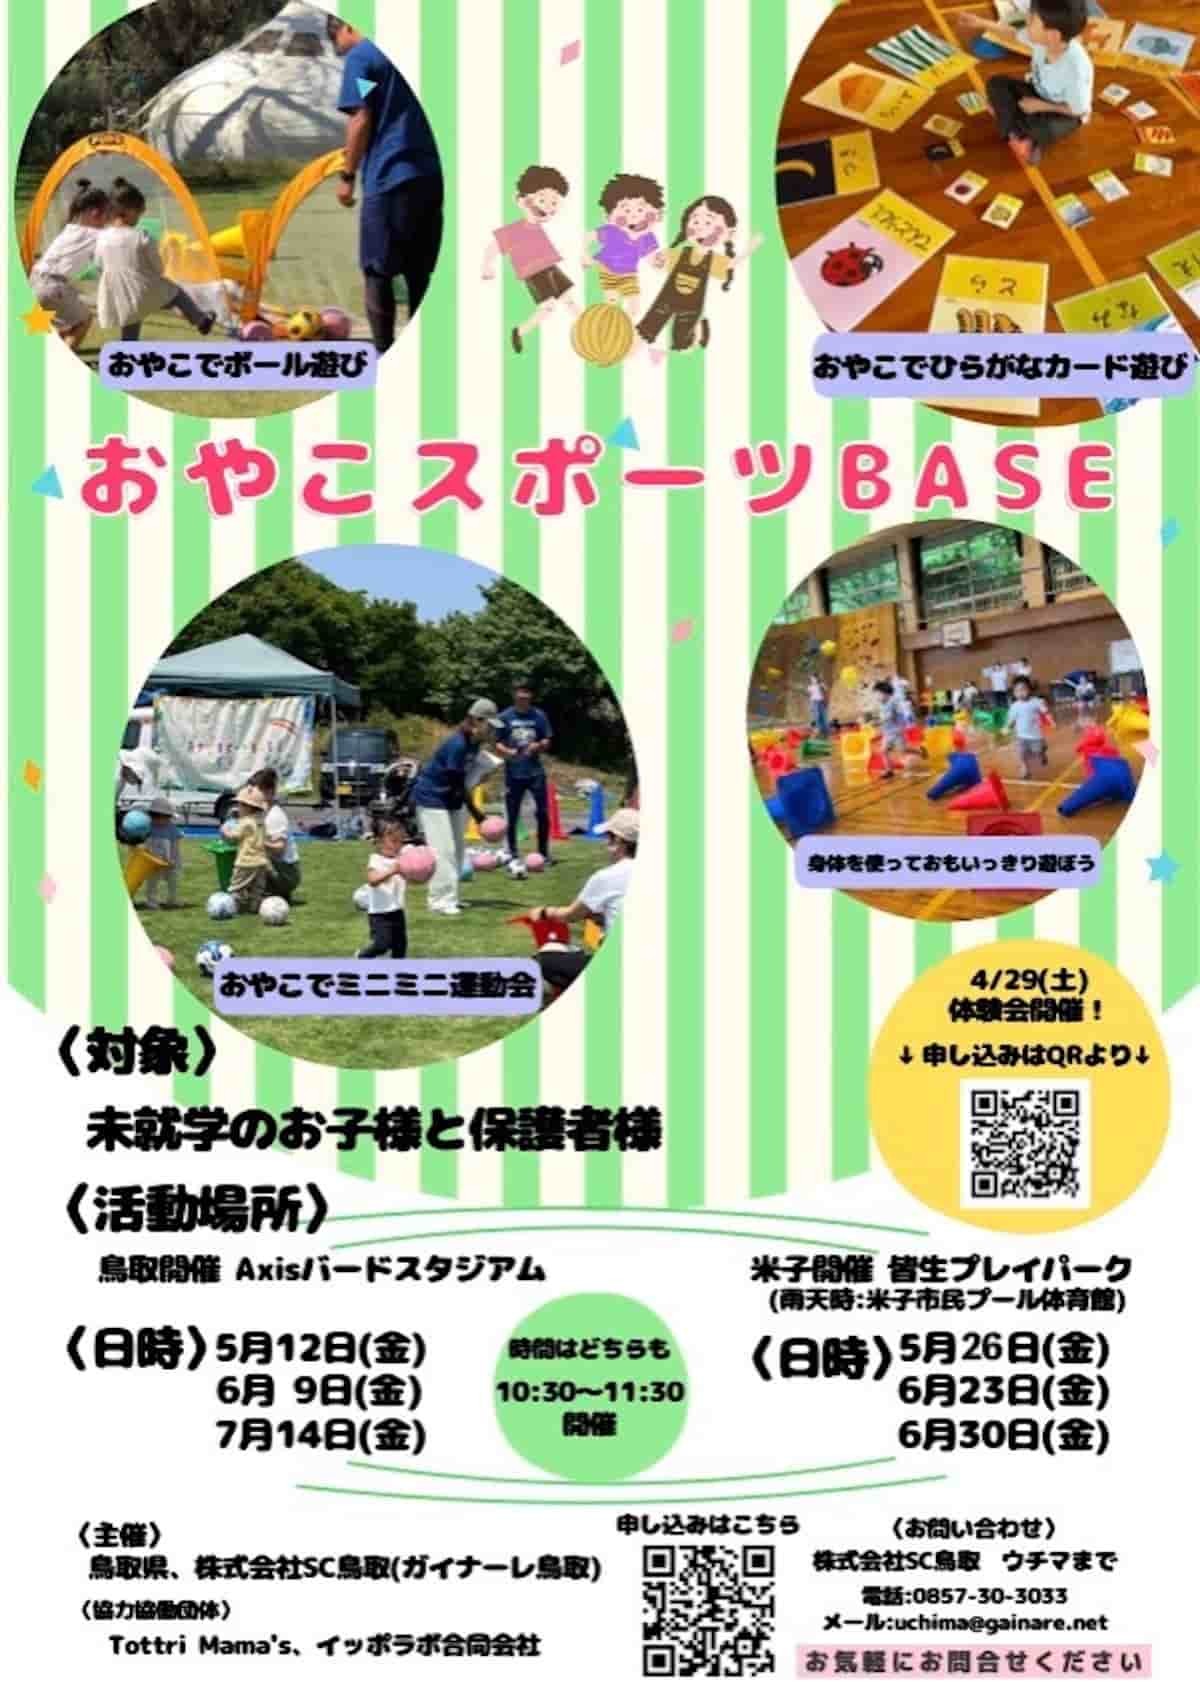 鳥取県のプロサッカークラブ「ガイナーレ鳥取」の親子向け運動・スポーツ教室「おやこスポーツBASE」